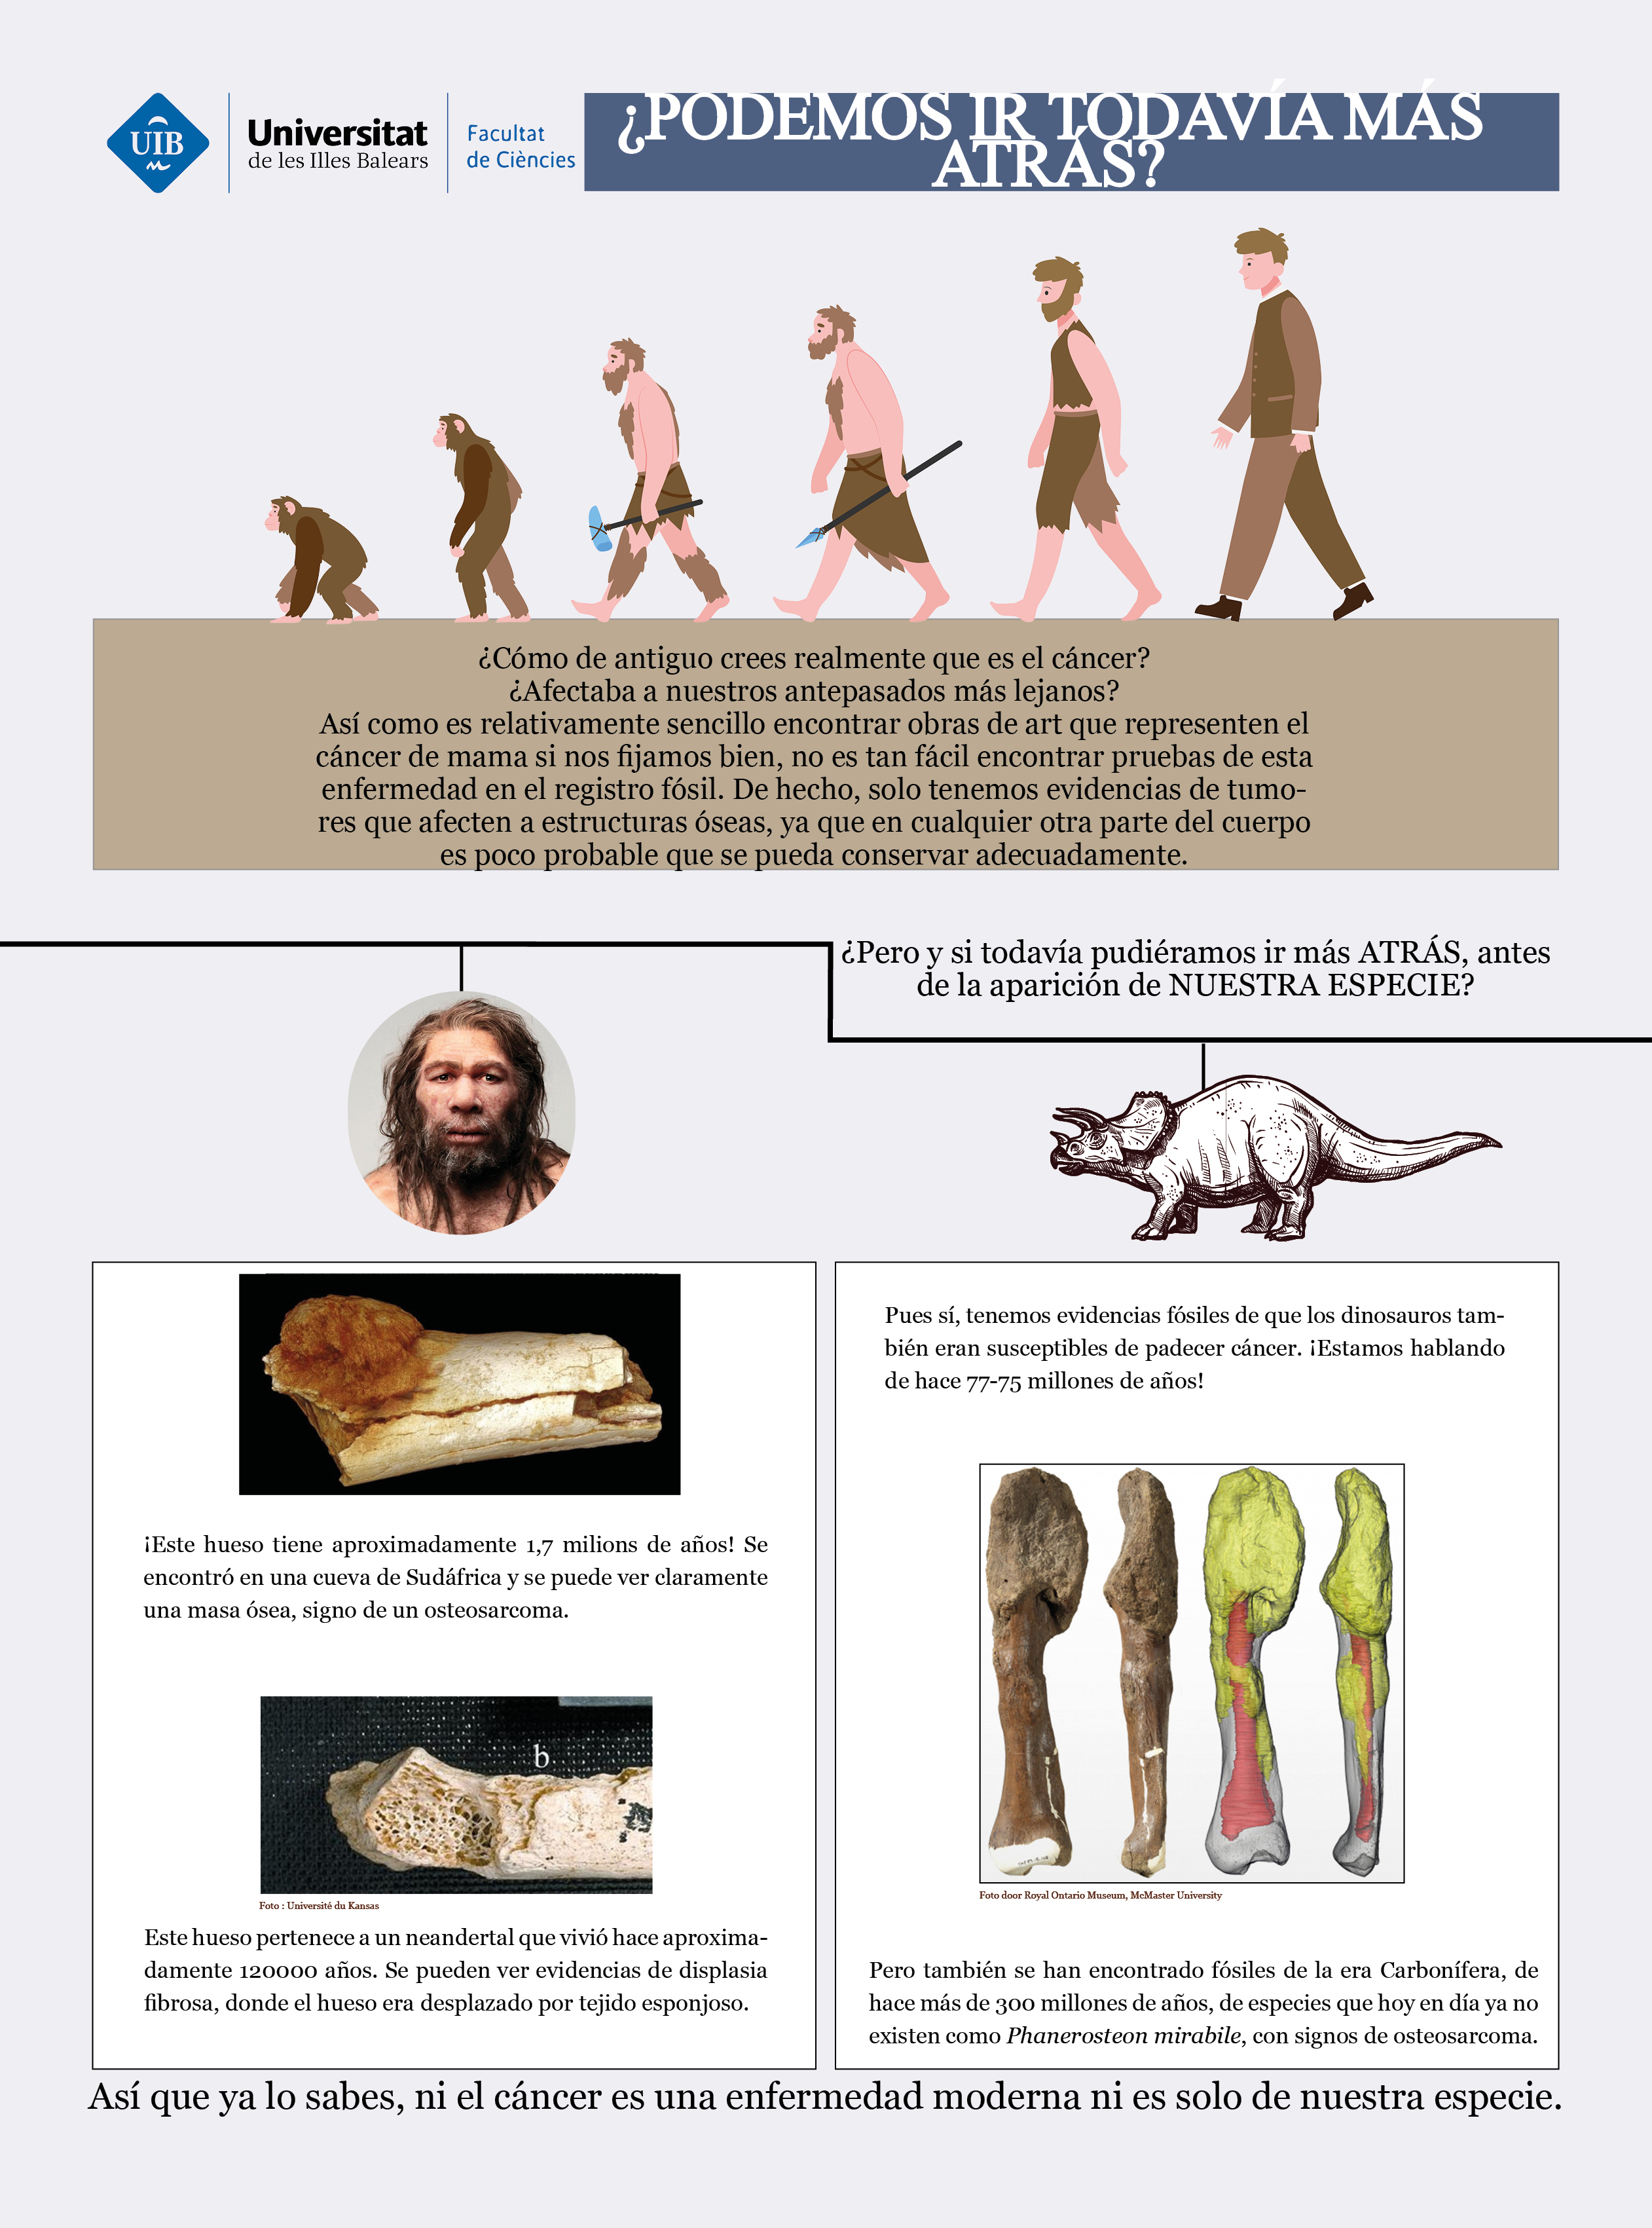 ¿Cómo crees que es la historia del cáncer y nuestra especie? En el registro fósil se han encontrado huesos que presentan signos de esta enfermedad, ¡de hace 1,7 millones de años! Pero si aún vamos más atrás, podemos encontrar fósiles de dinosaurios de hace 77 millones de años, o de especies que no hemos llegado a conocer, de hace 300 millones de años, con signos de cáncer óseo.